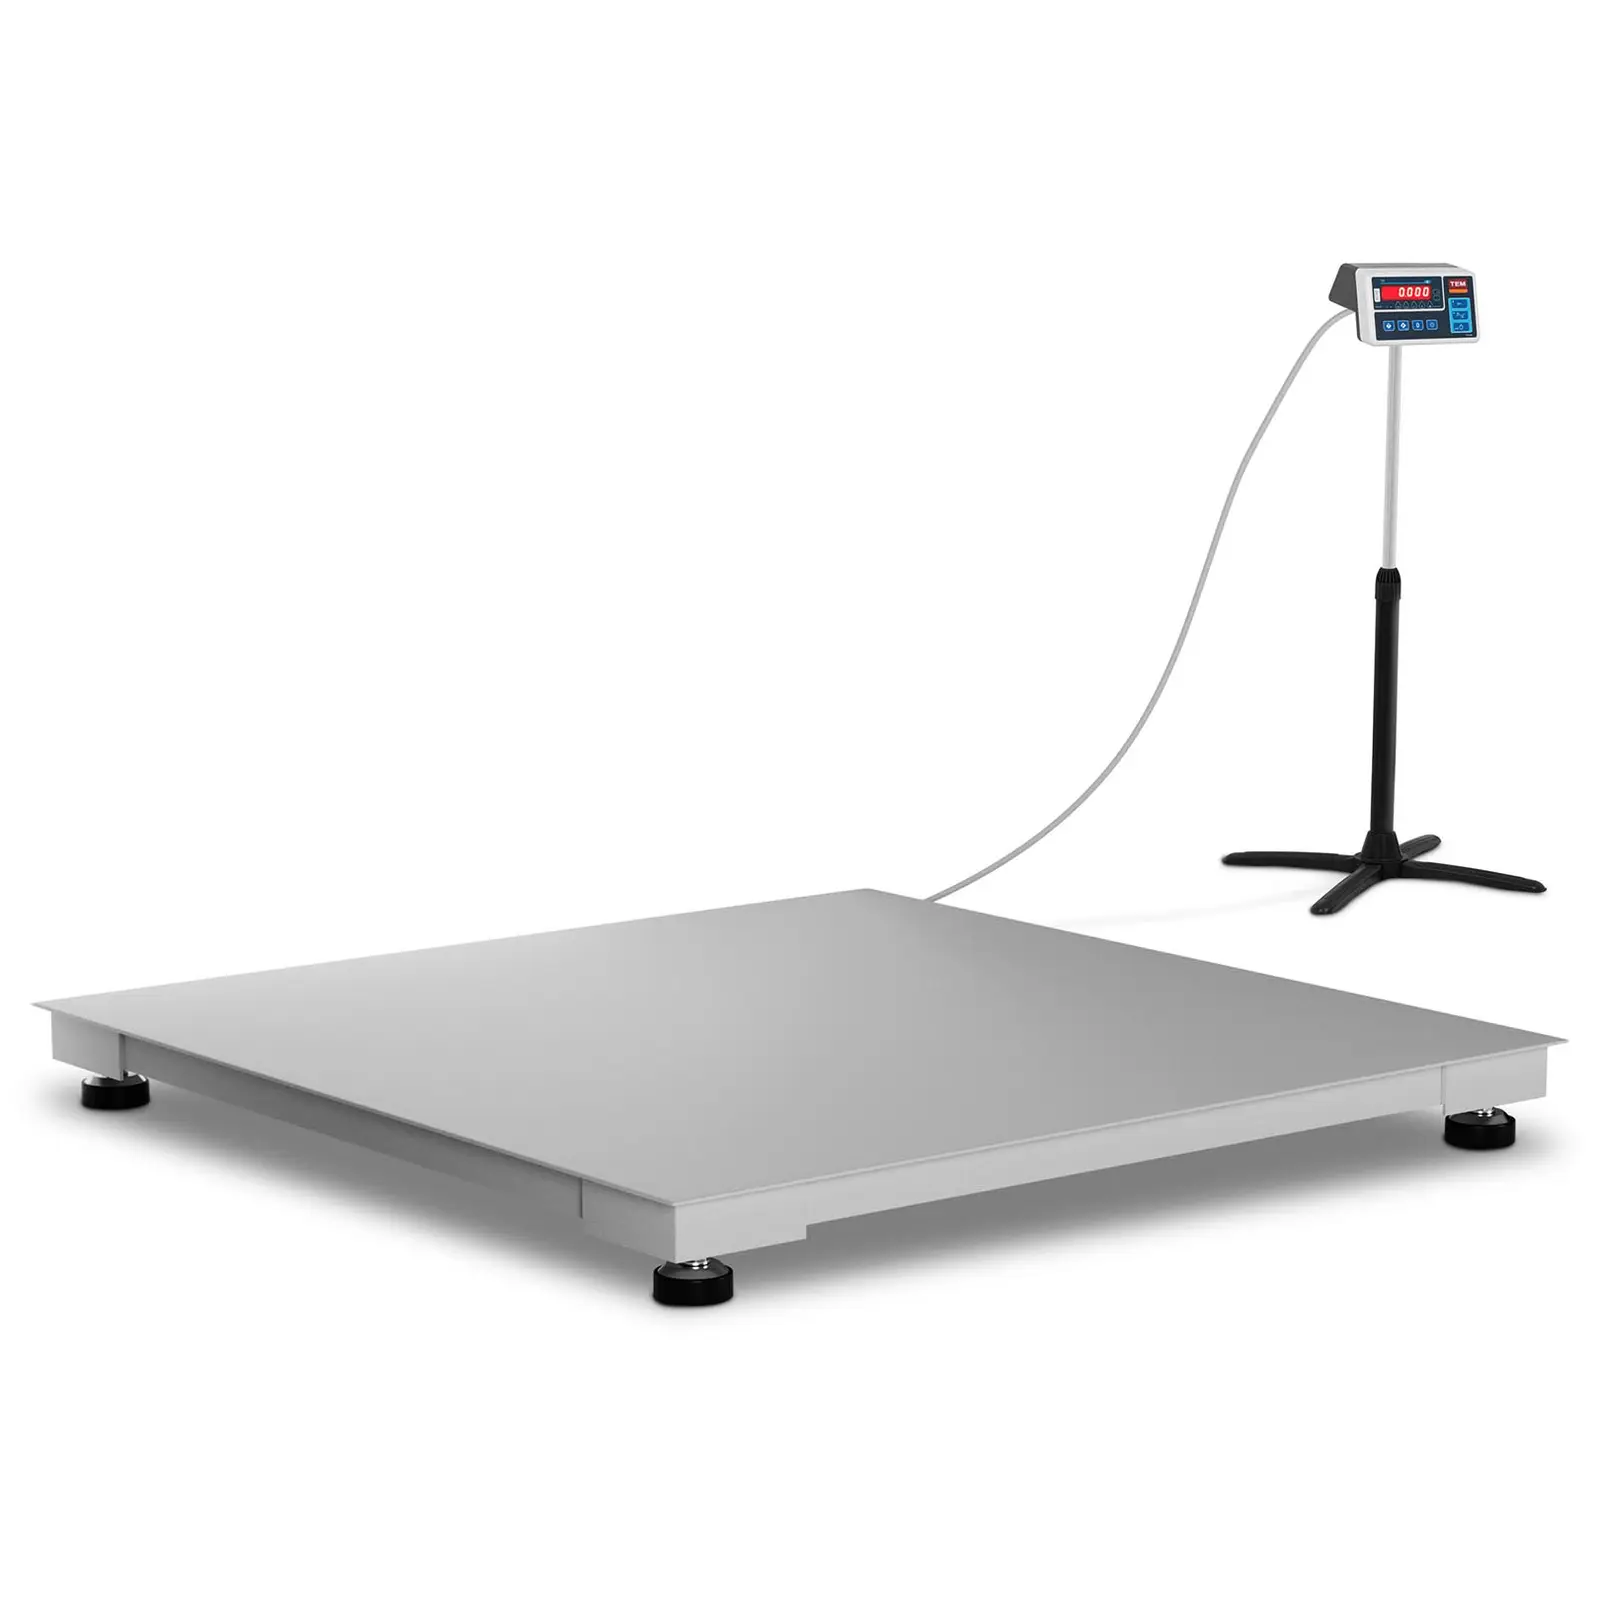 Báscula de suelo - calibrada - 1.500 kg / 500 g - 120 x 120 cm - LED